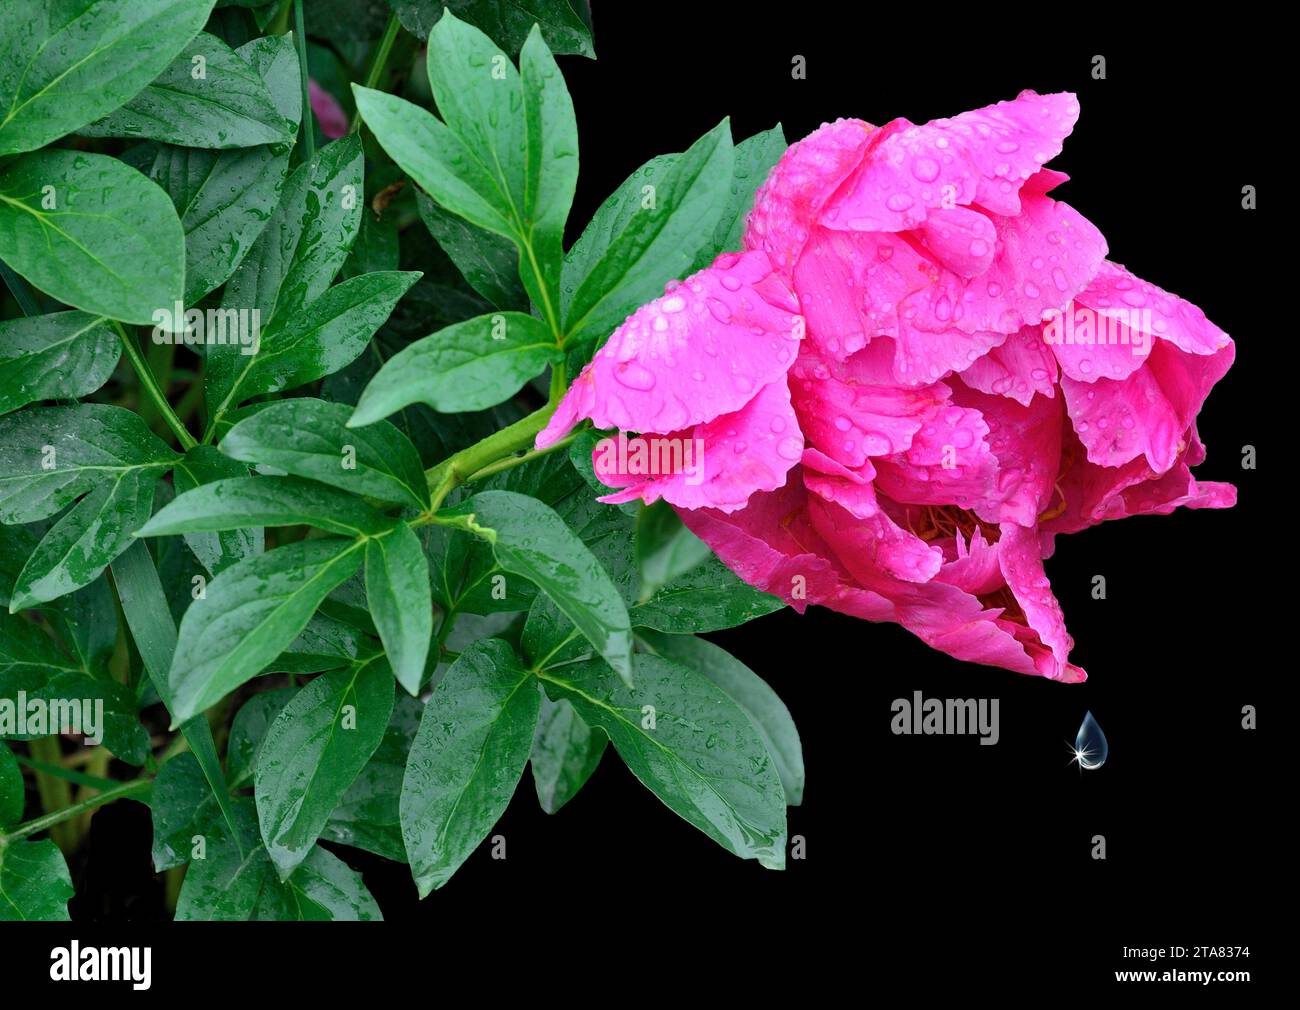 Einzelne rosafarbene Pfingstrosenblüte bedeckt mit Wassertropfen nach Regen als Symbol für Frische, oder traurig und melancholisch. Elegante zarte Päoniefläume mit nassem pe Stockfoto